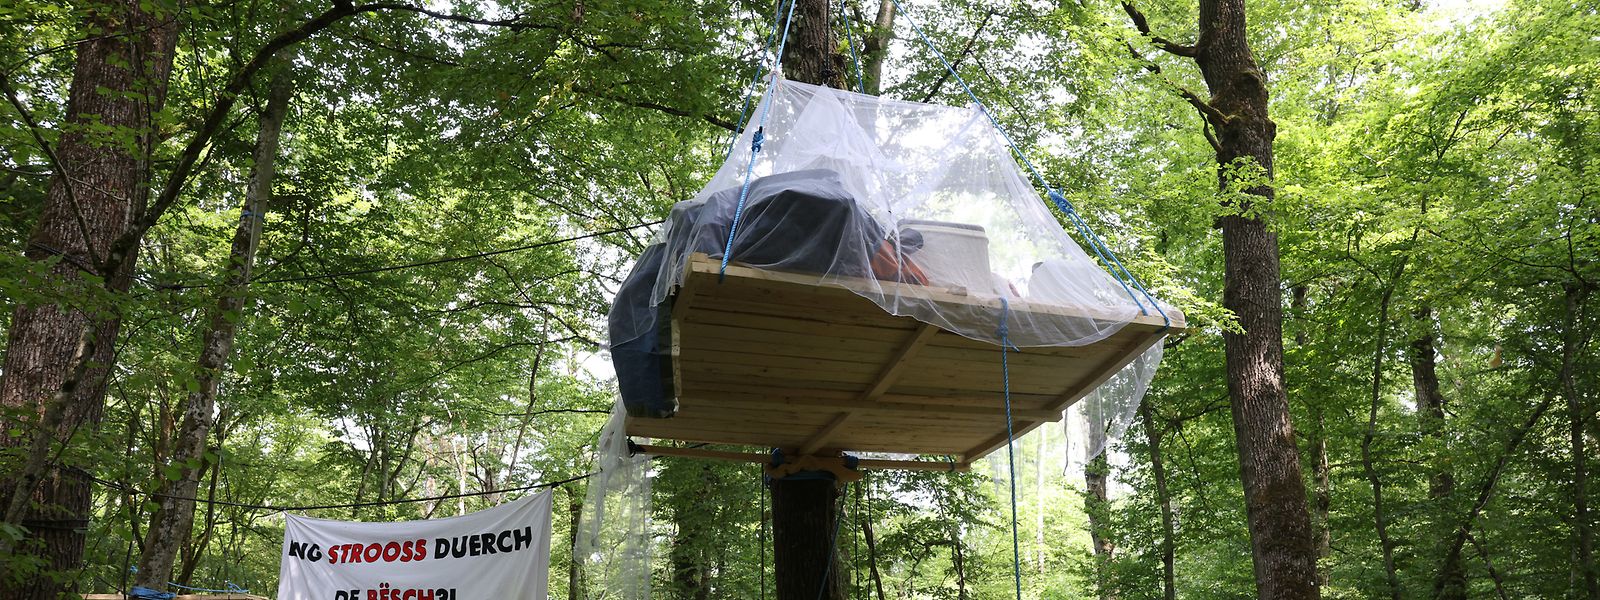 Les jeunes ont installé un campement dans la forêt près de Sassenheim.